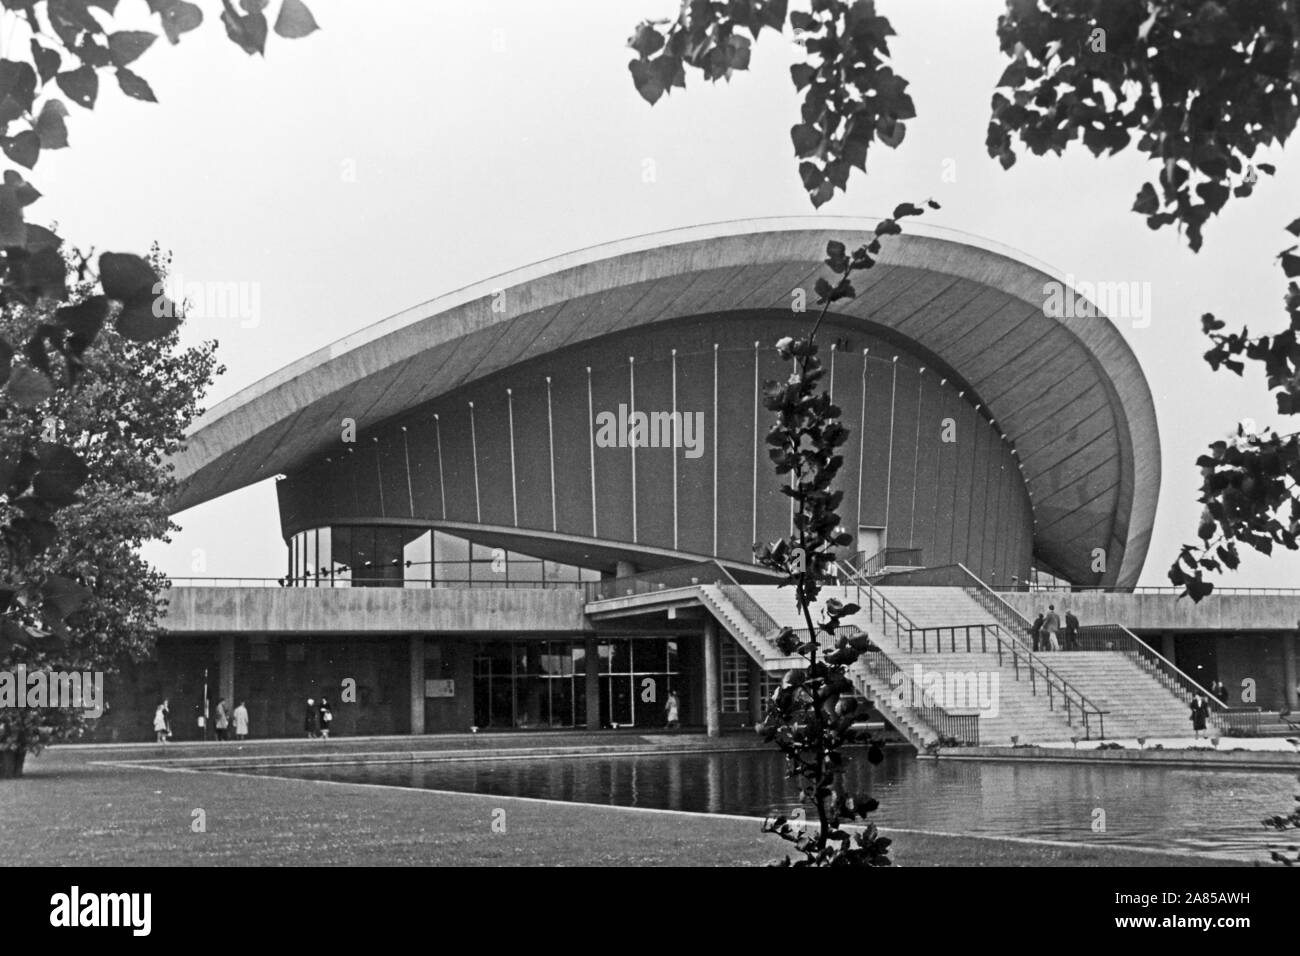 Kongresshalle an der John Foster Dulles Allee im Ortsteil Tiergarten in Berlin, Deutschland 1961 sterben. Kongress- und Veranstaltungshalle am Tiergarten in Berlin, Deutschland 1961. Stockfoto